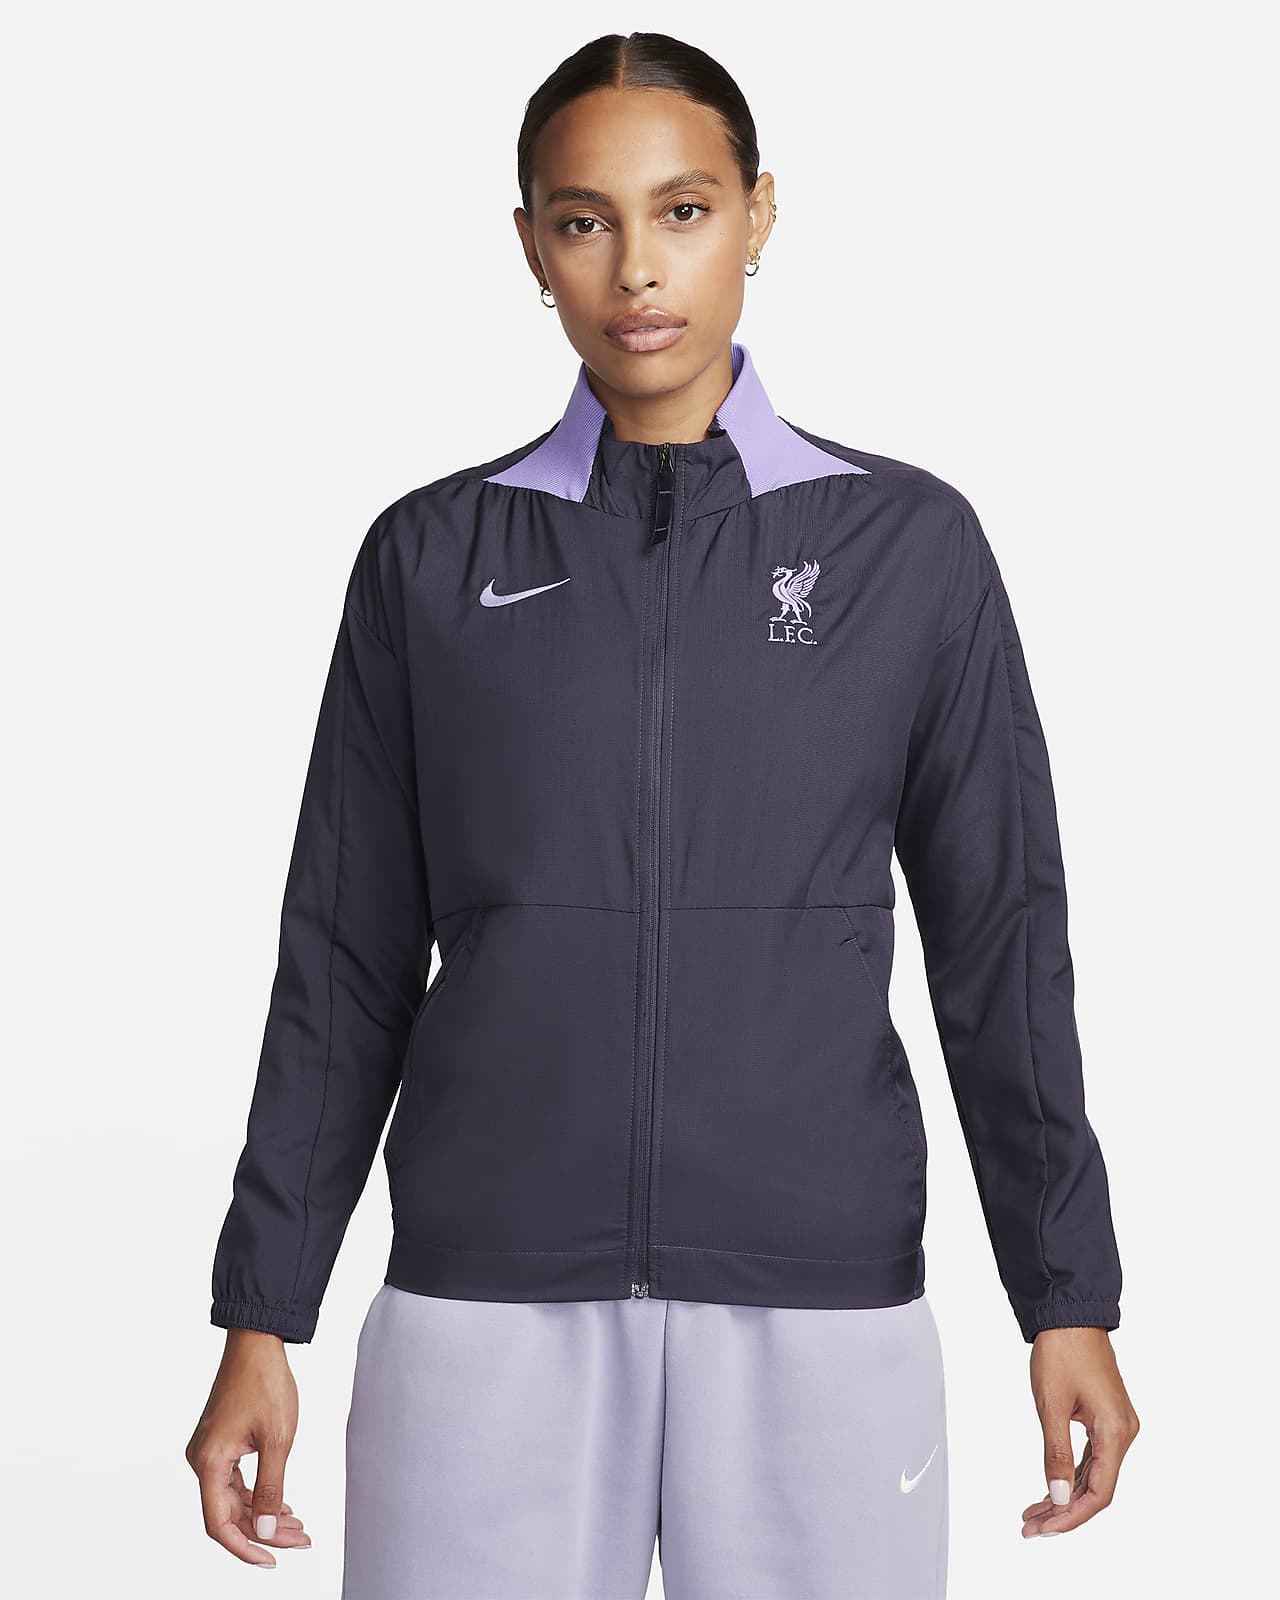 Γυναικείο ποδοσφαιρικό τζάκετ Nike Dri-FIT εναλλακτικής εμφάνισης Λίβερπουλ